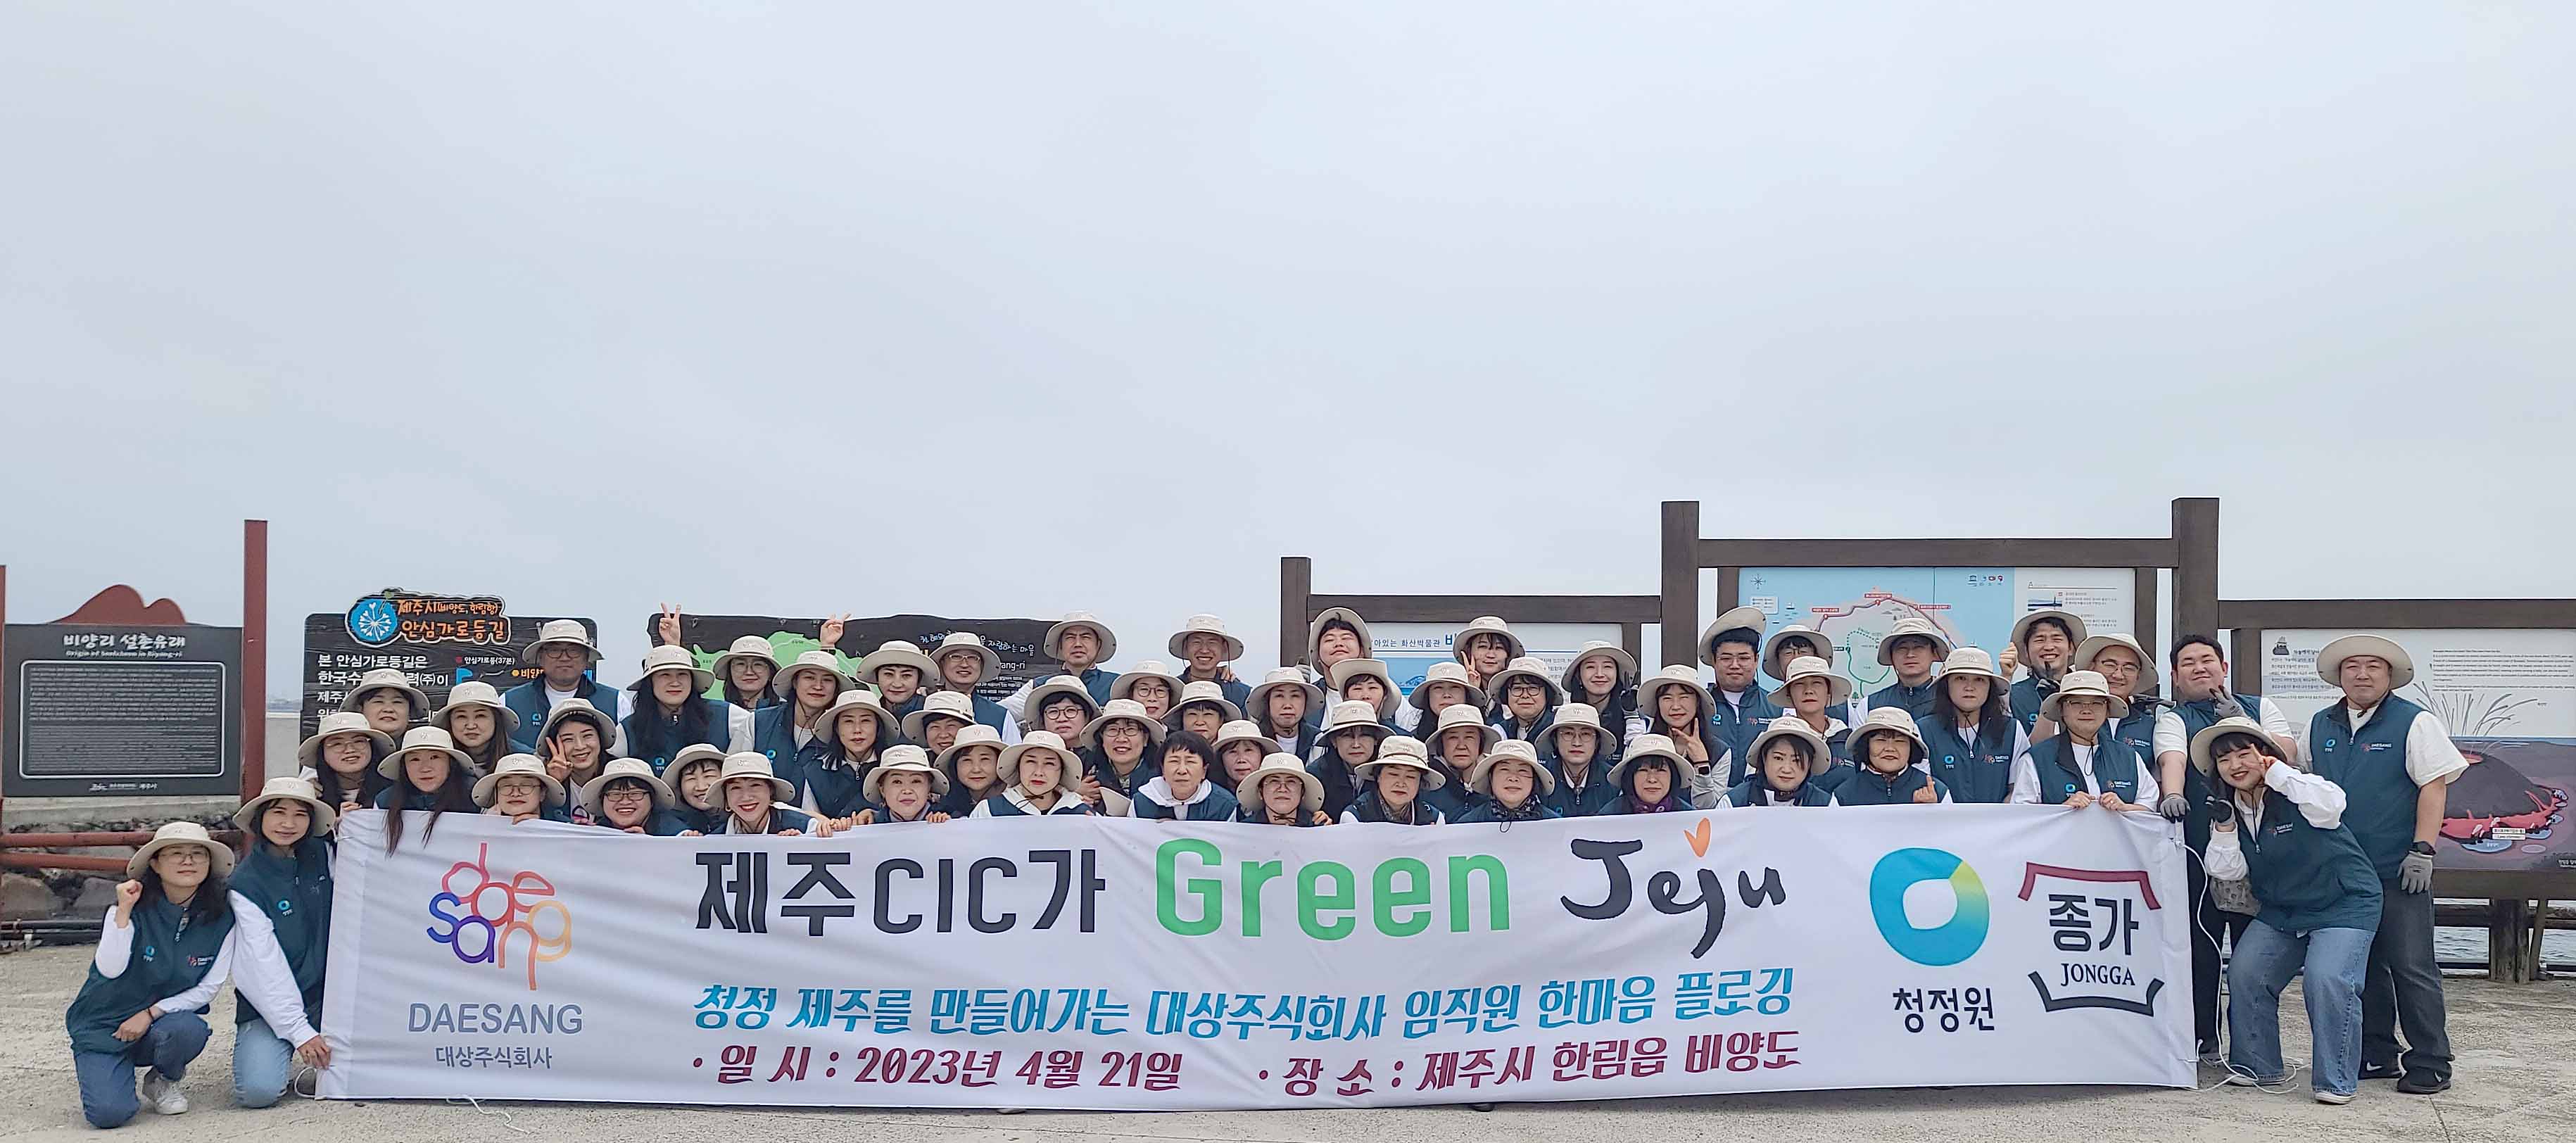 대상(주) 제주CIC센터, 비양도 플로깅 활동 ´ Green Jeju ´ 행사 열어)